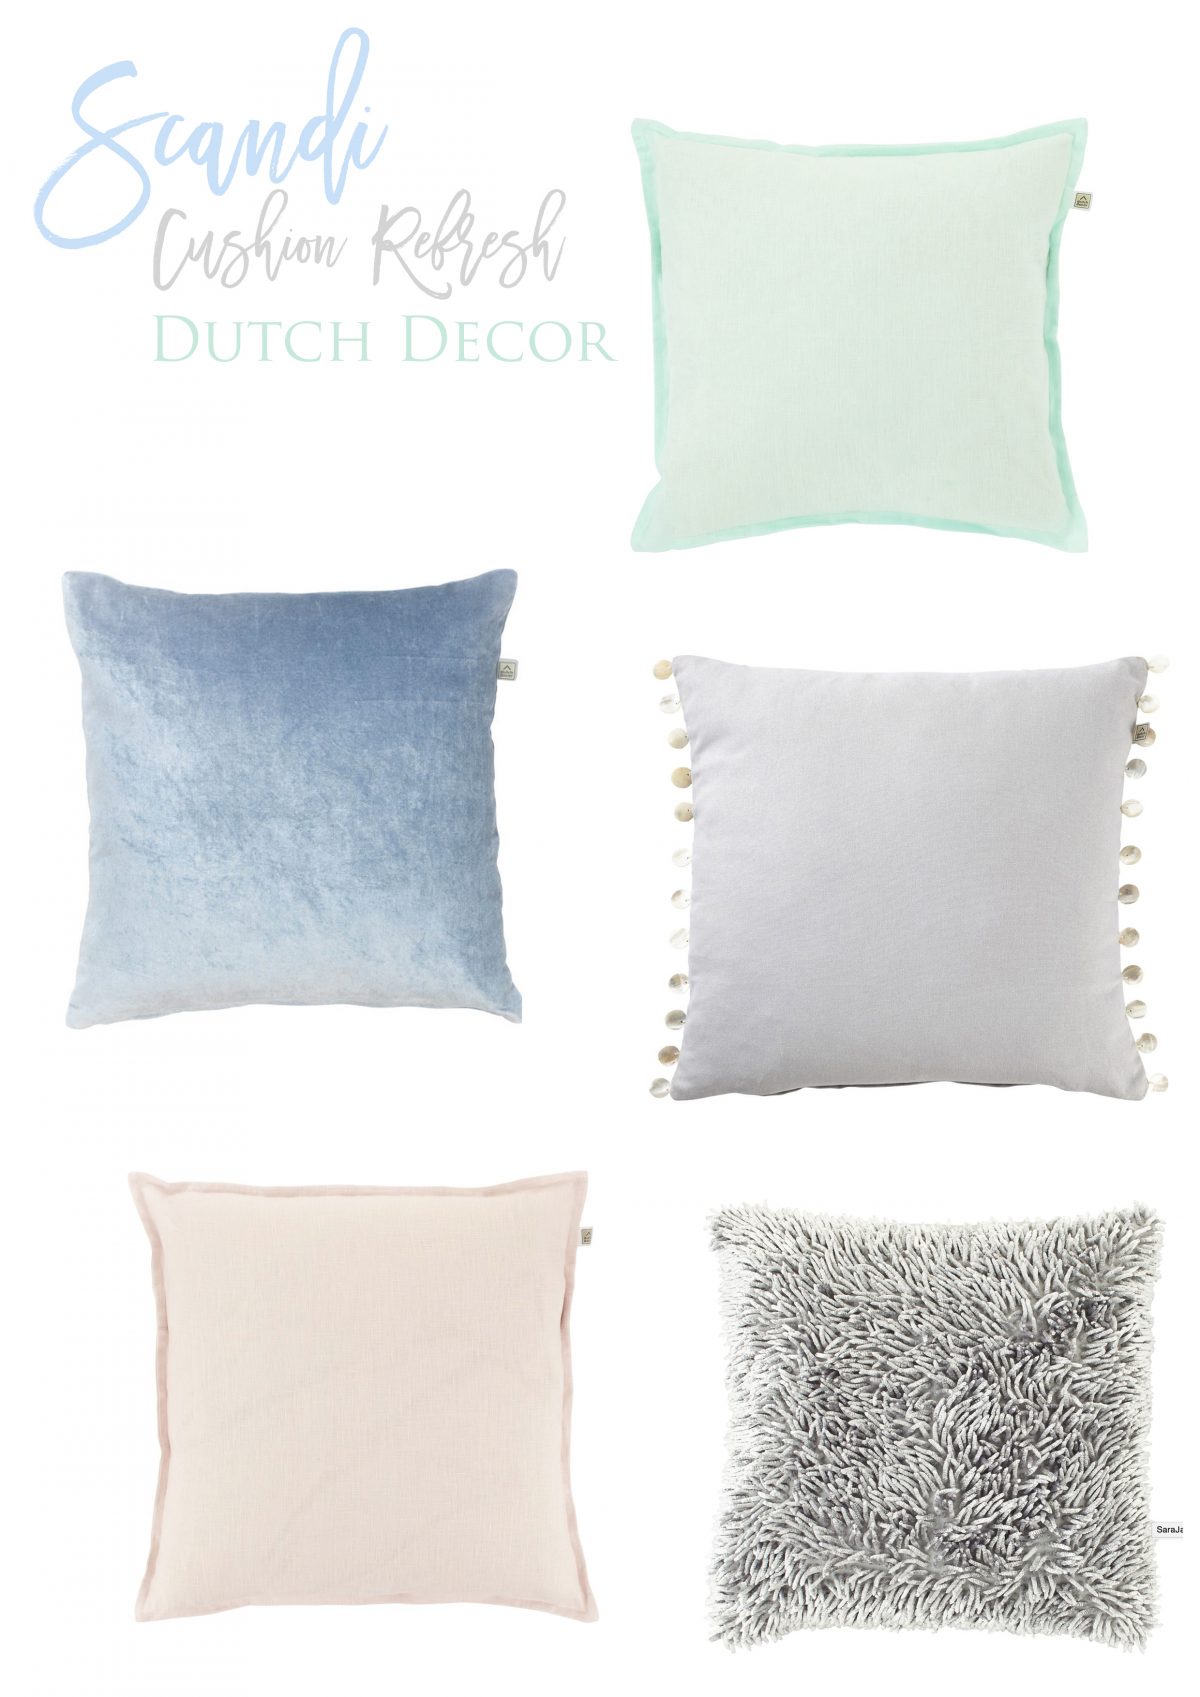 scandi cushion refresh wayfair dutch decor